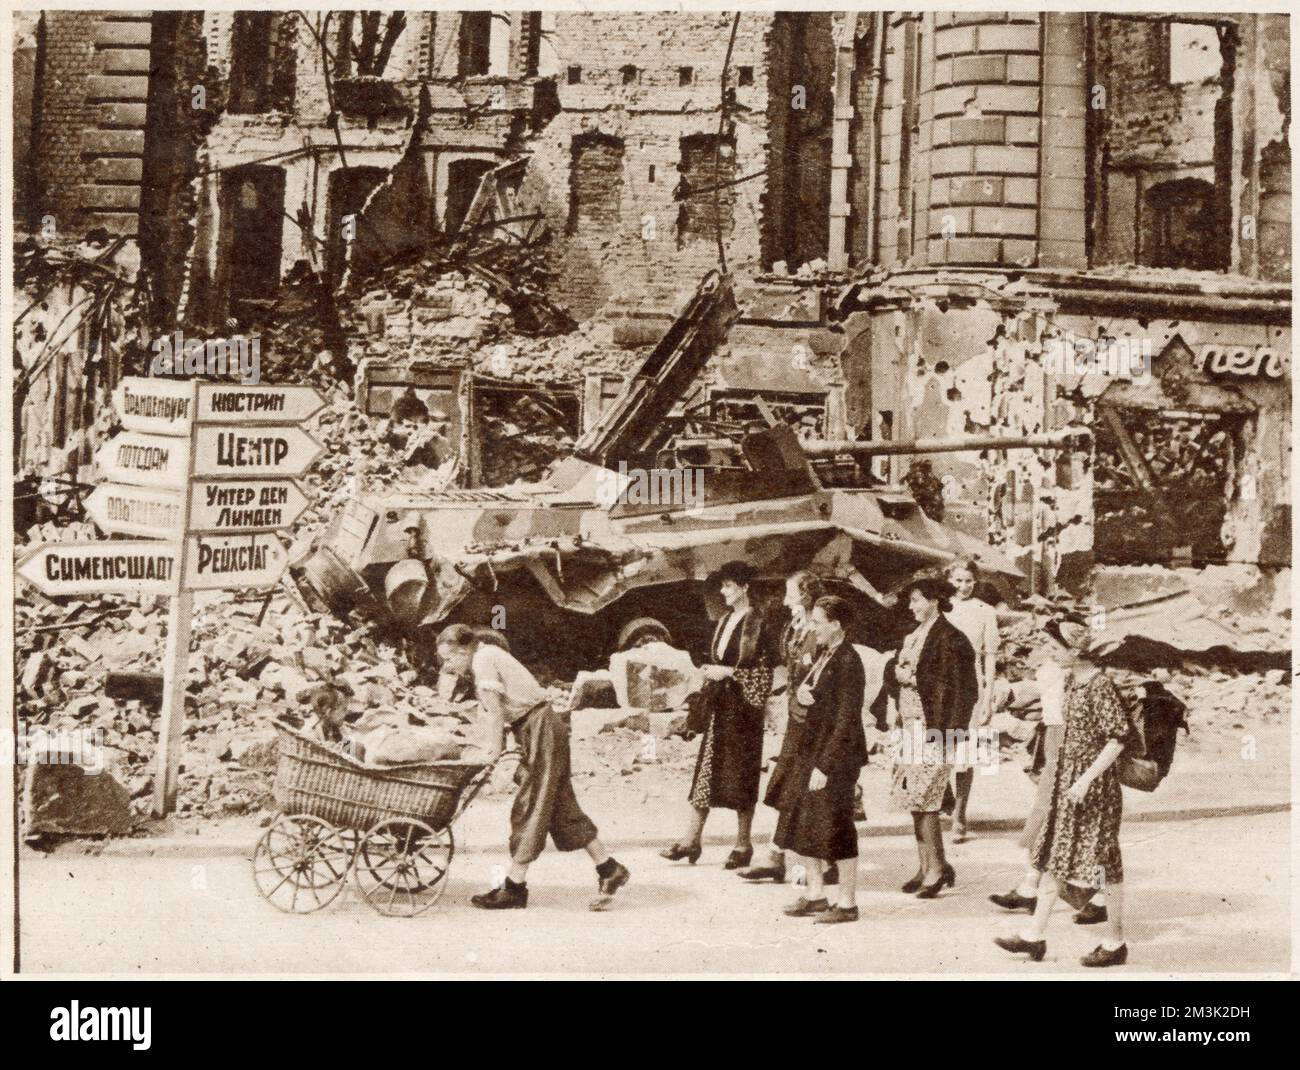 Un gruppo di berlinesi che passeggiava davanti alle rovine di Nollendorf Platz alla ricerca di un luogo dove vivere, dopo la fine della seconda guerra mondiale, l'estate 1945. Sullo sfondo un carro armato tedesco naufragato e un cartello stradale russo si siedono fianco a fianco. Foto Stock